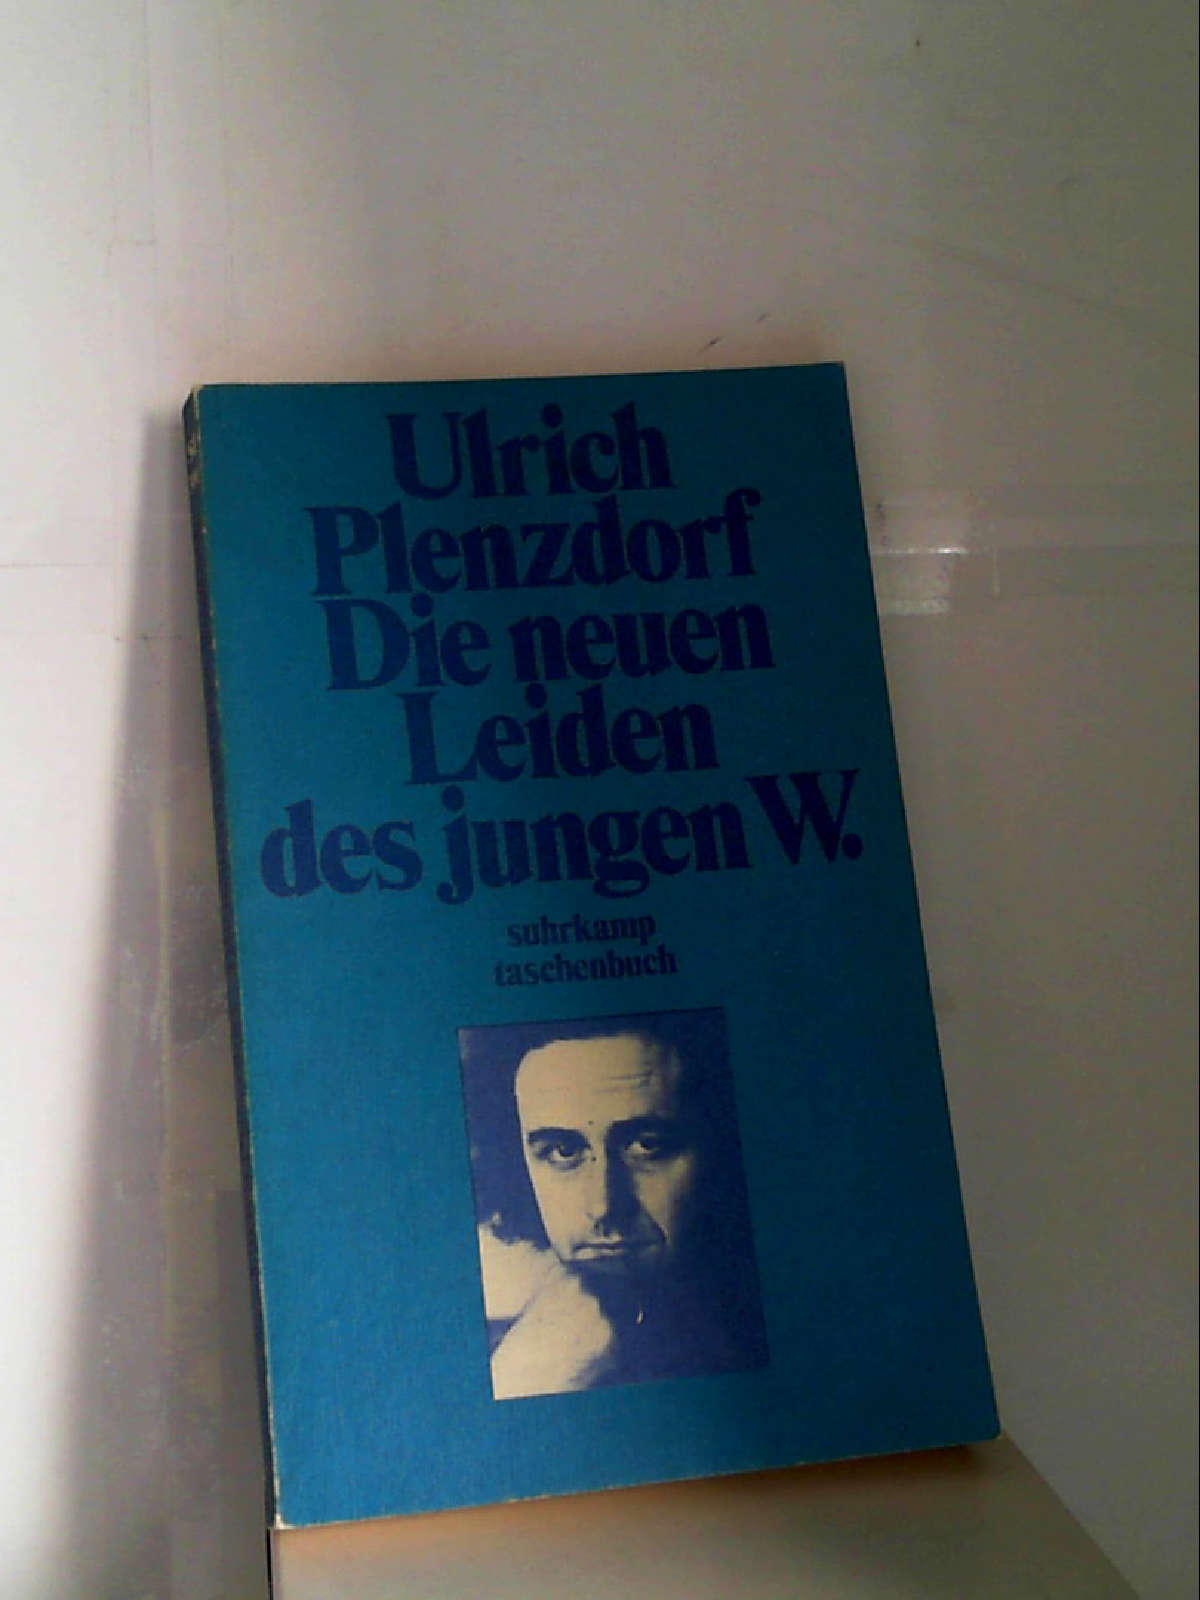 Ulrich Plenzdorf: Die neuen Leiden des jungen W. [Paperback] Ulrich Plenzdorf - Ulrich Plenzdorf